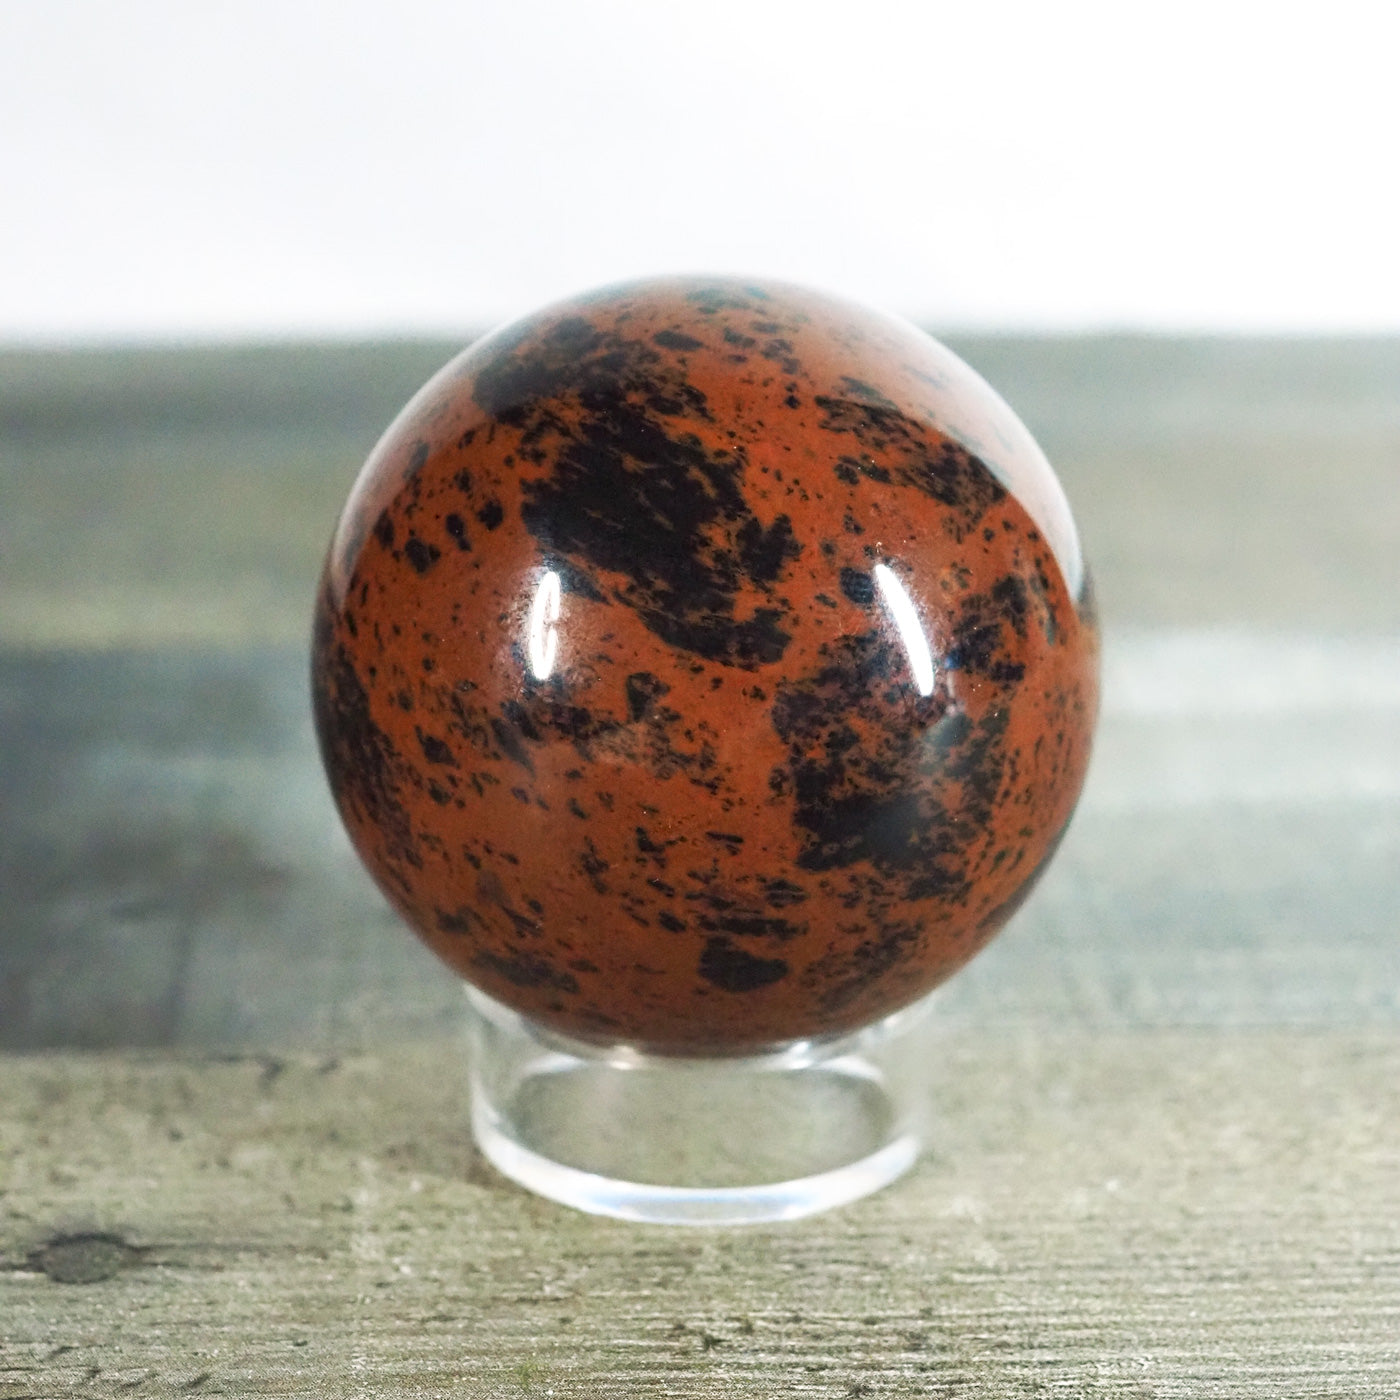 Mahogany Obsidian Sphere A